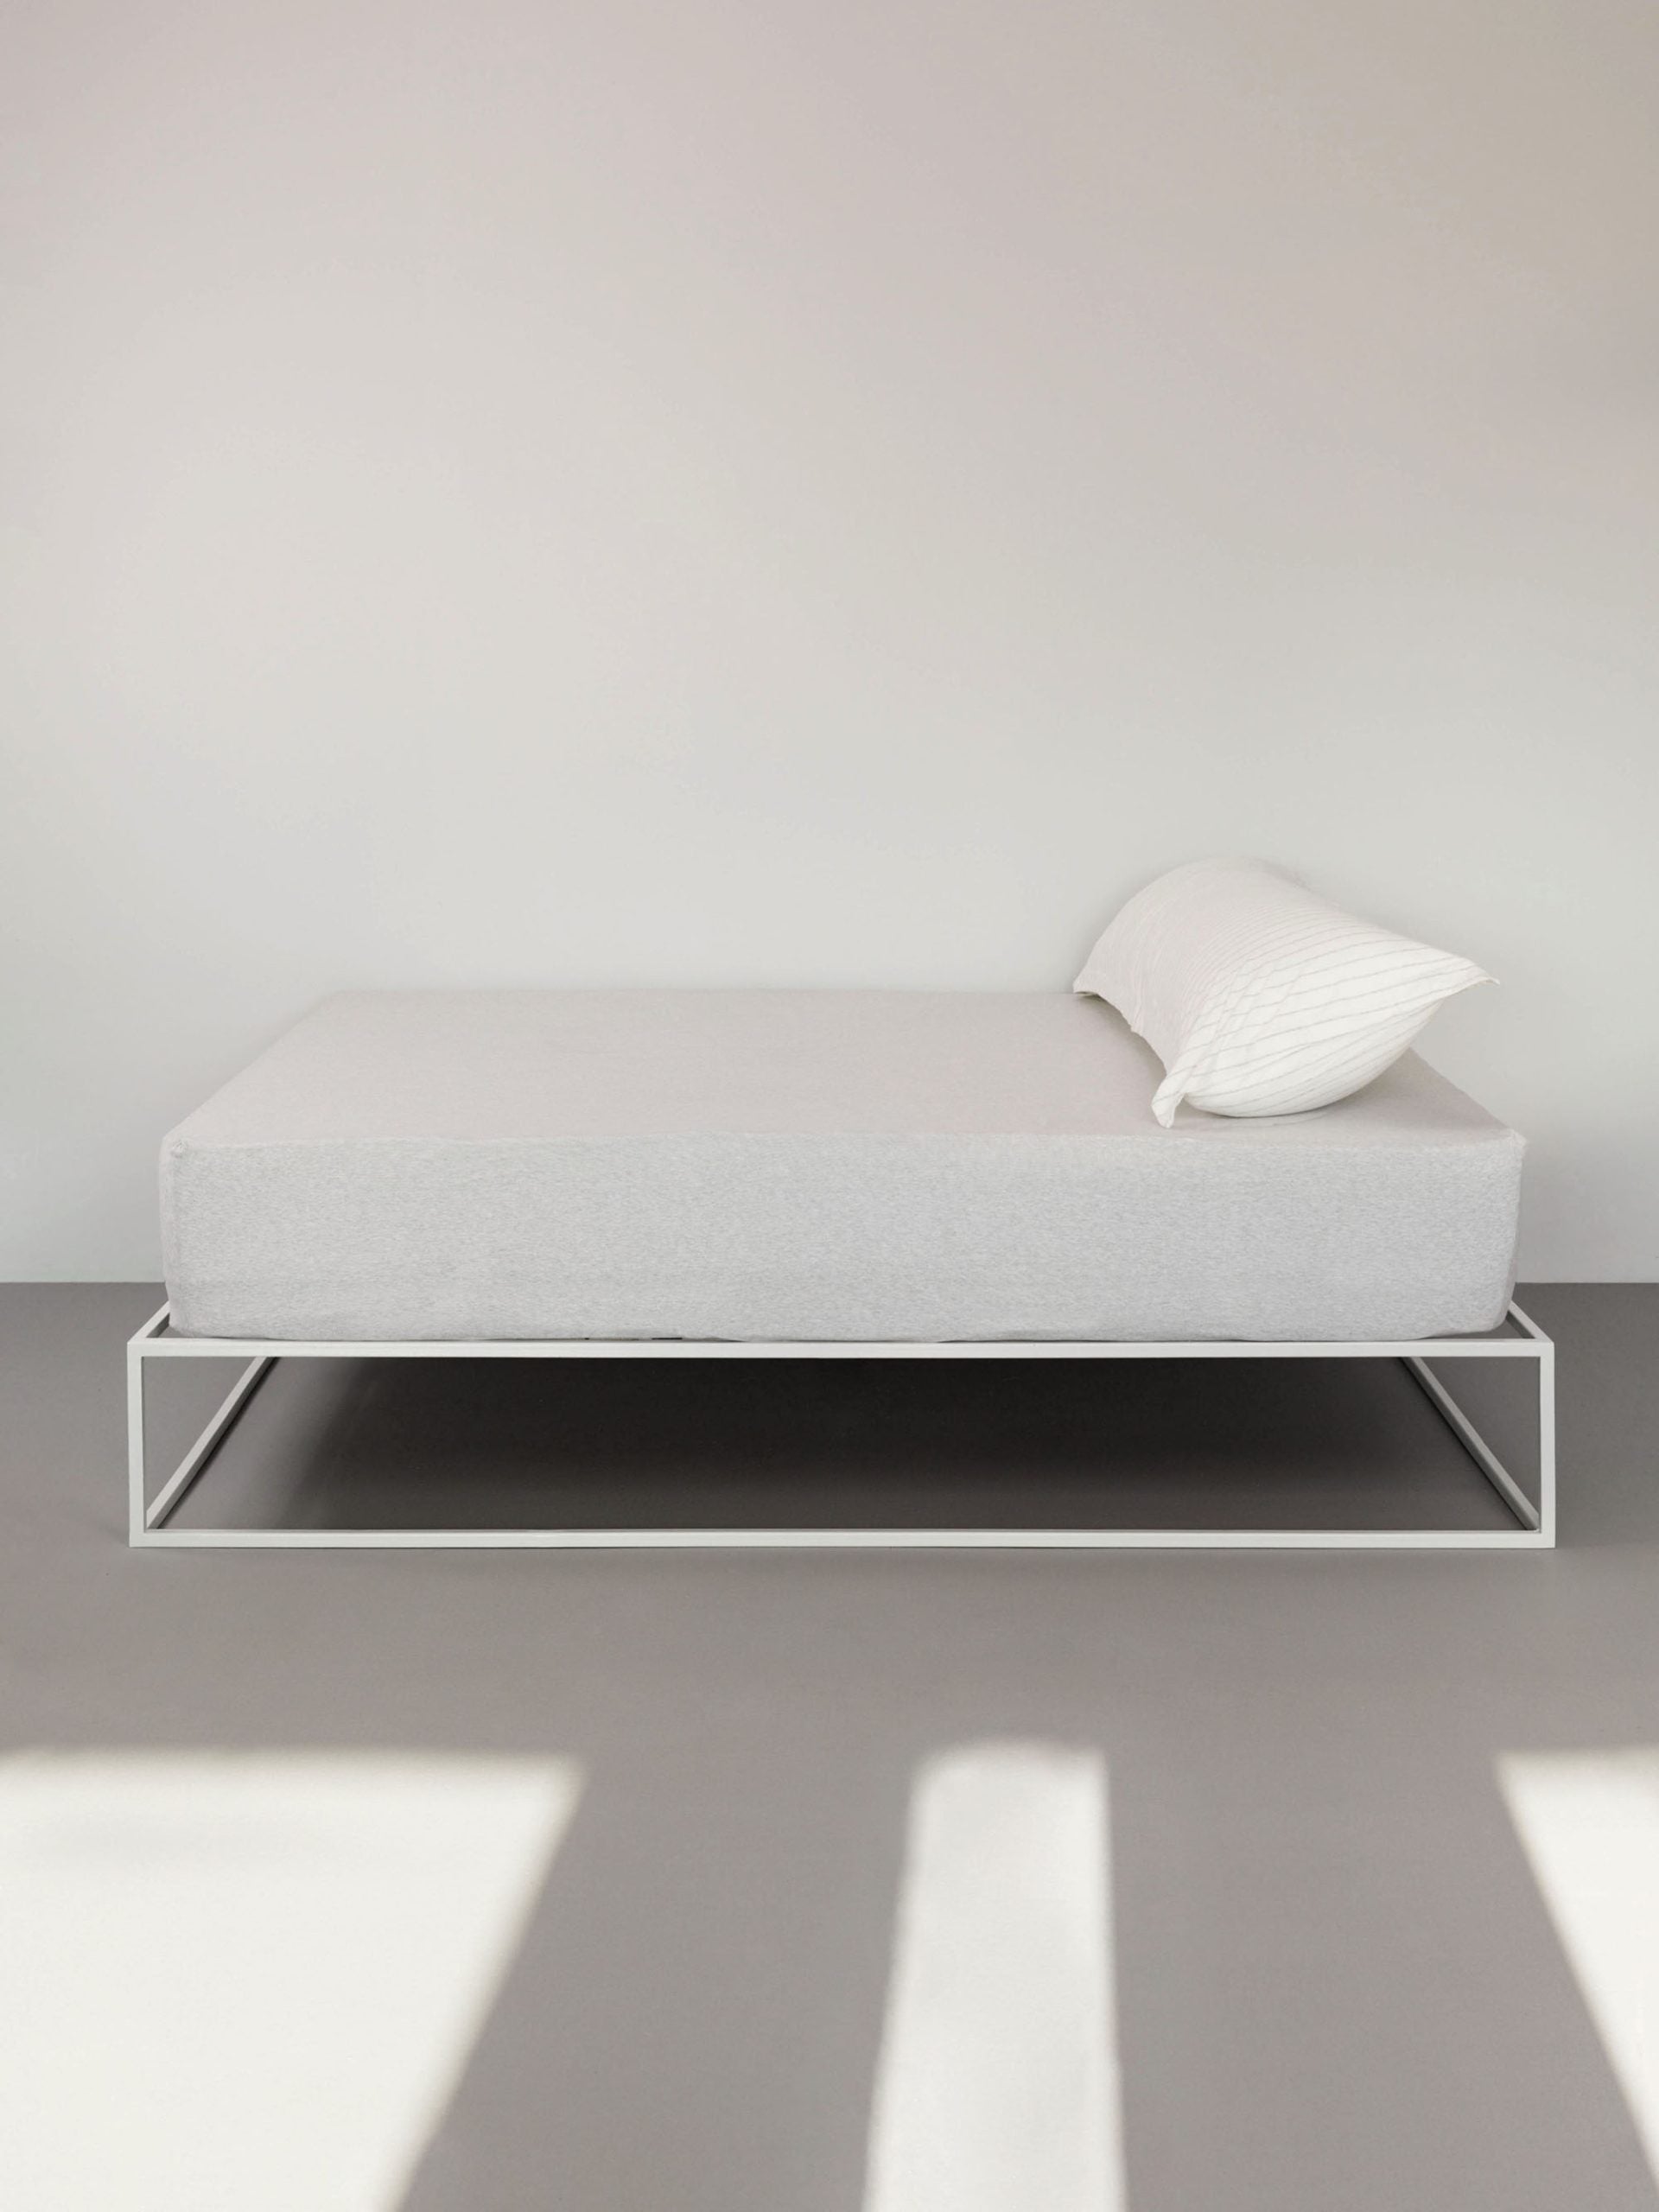 מיטת ברזל לבנה עם סדין, 2 כריות וציפיות לכריות